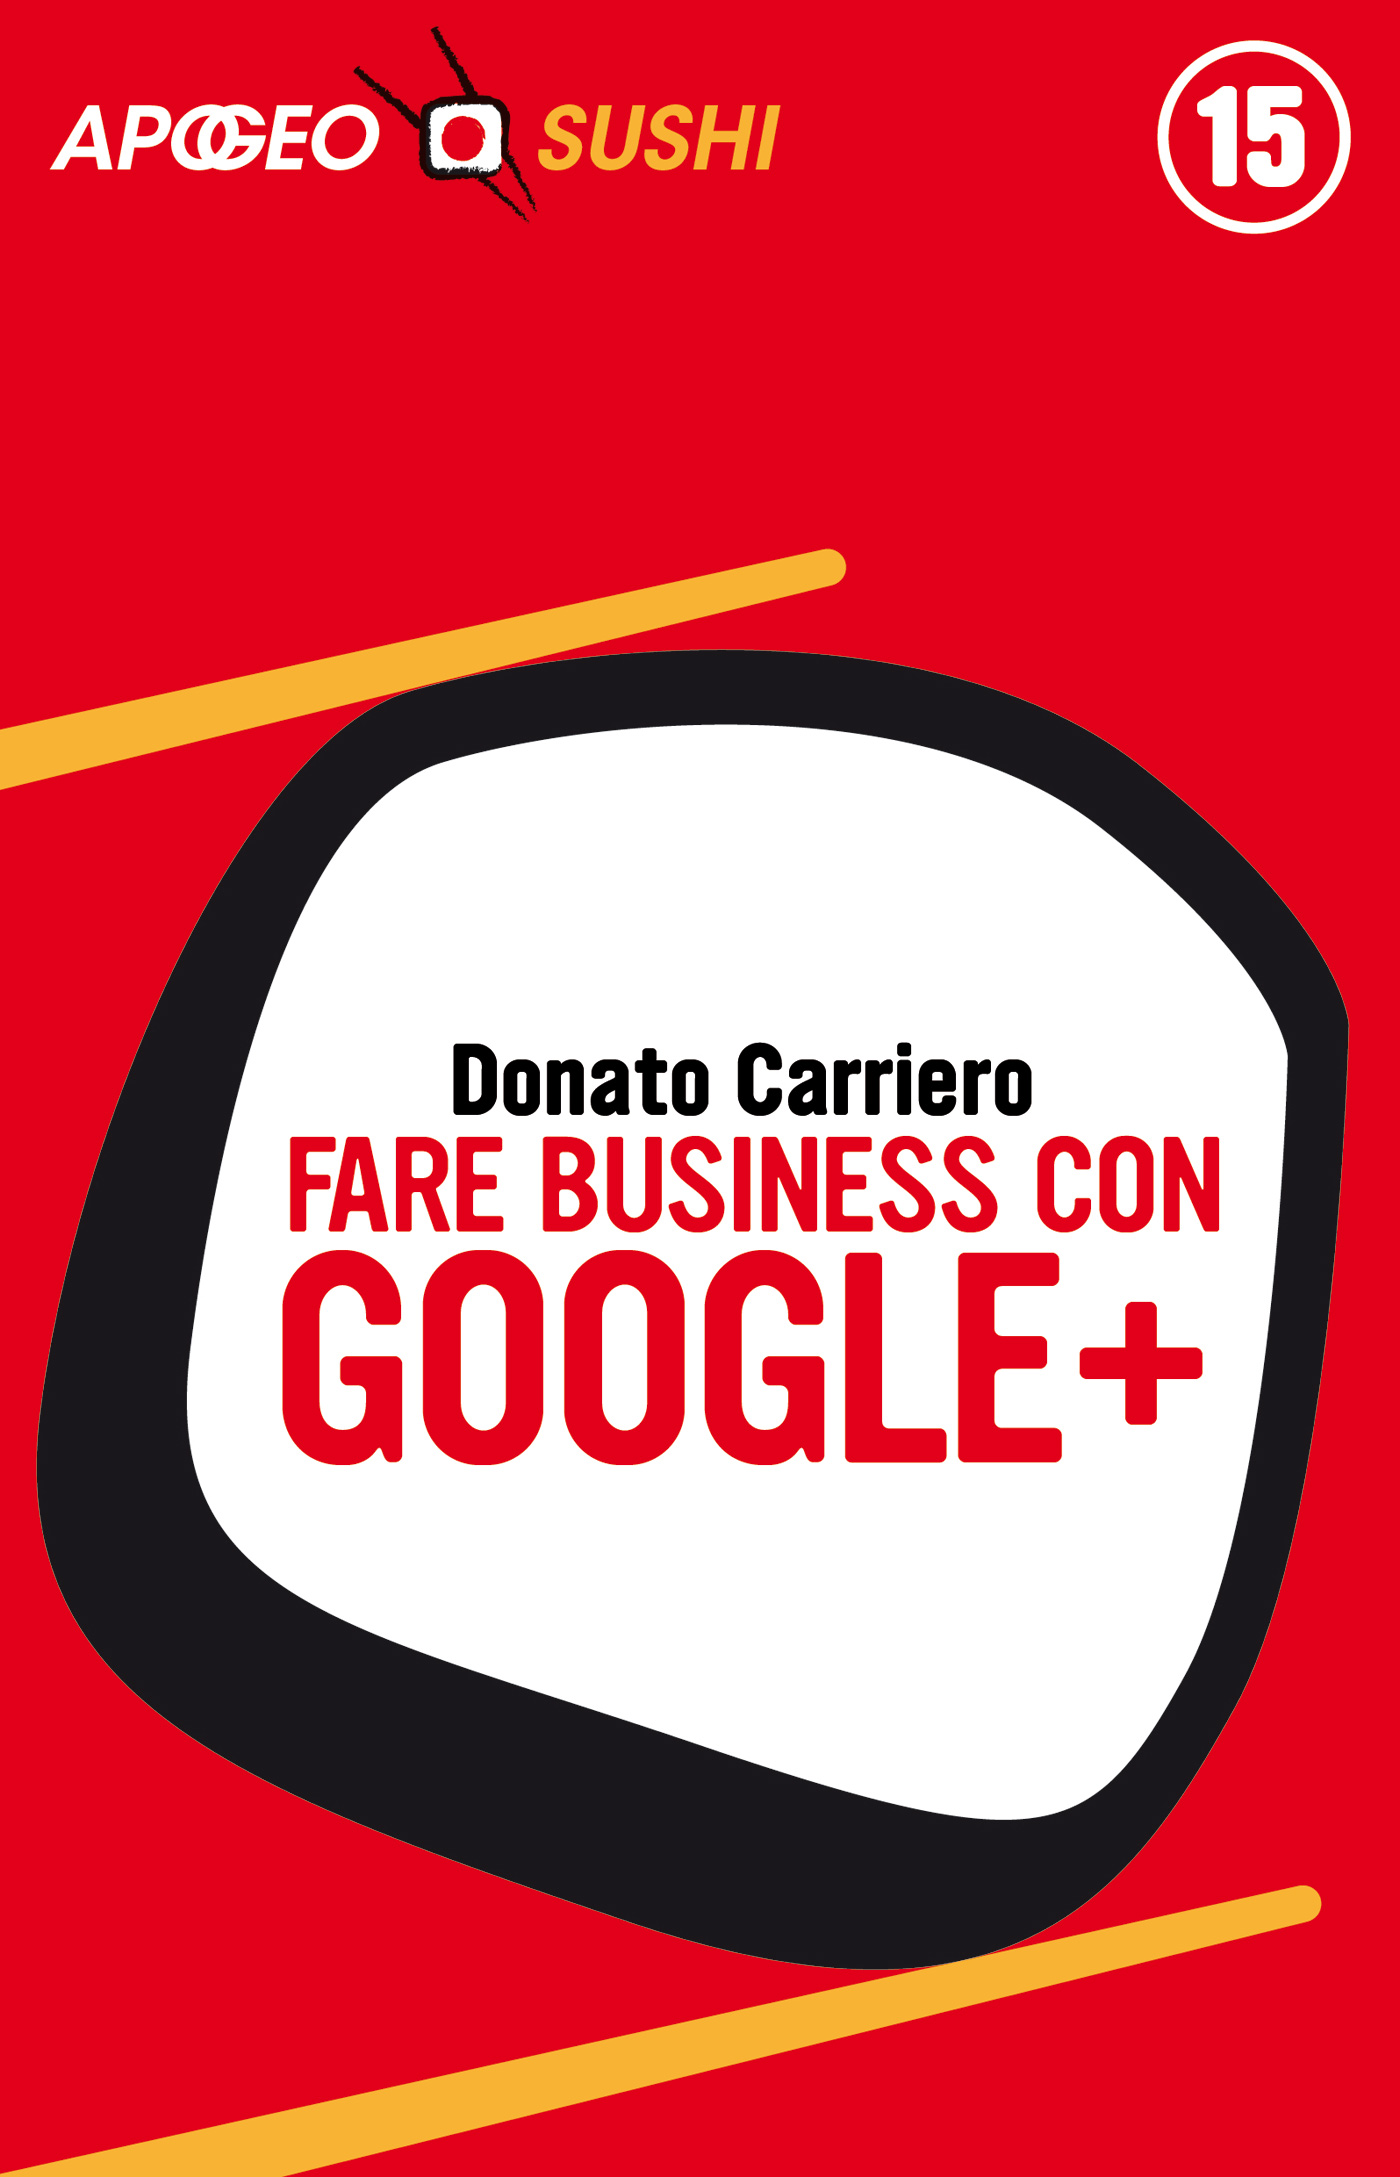 Fare business con Google+ – Donato Carriero